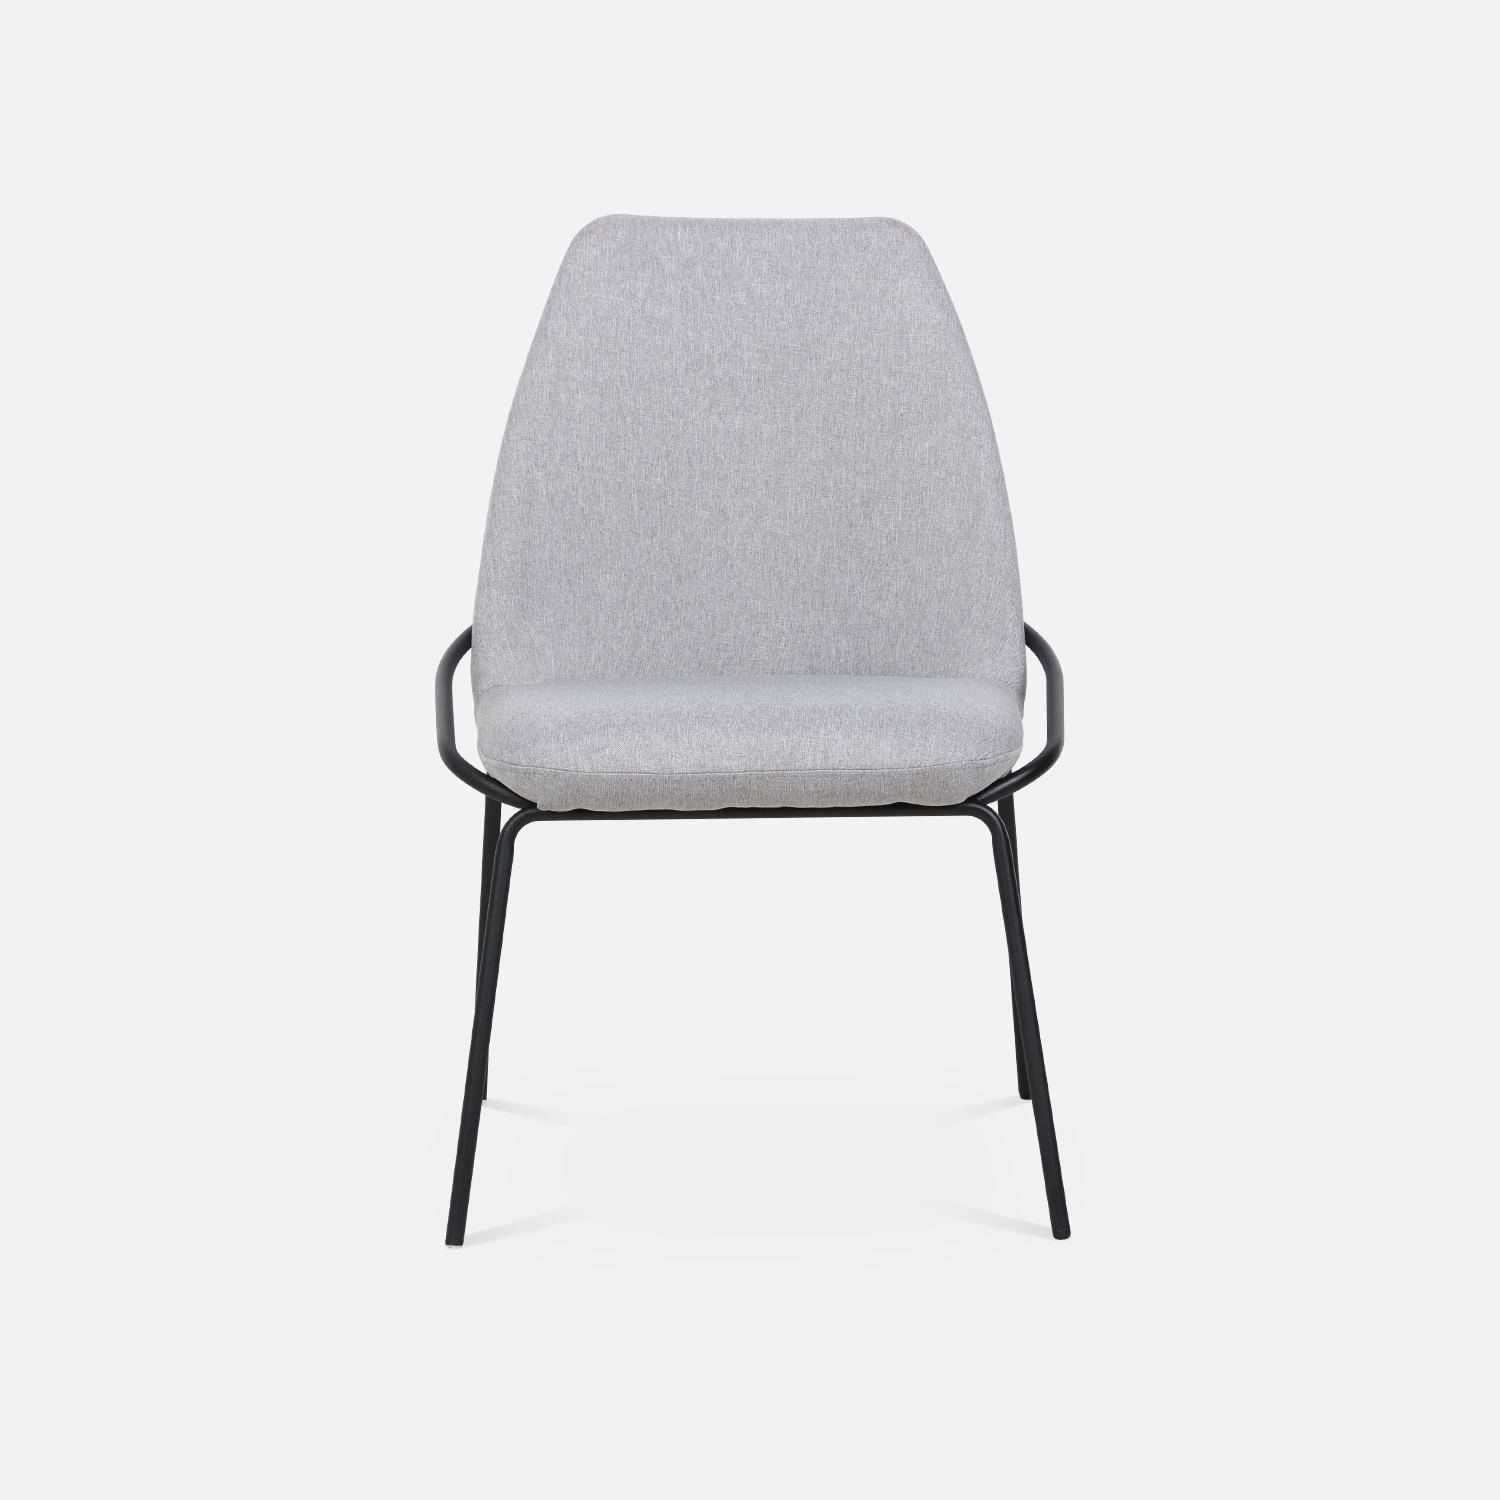 Chaise design - Lisbet - en tissu gris clair, 56,5 x 63 x 82,5cm Photo4